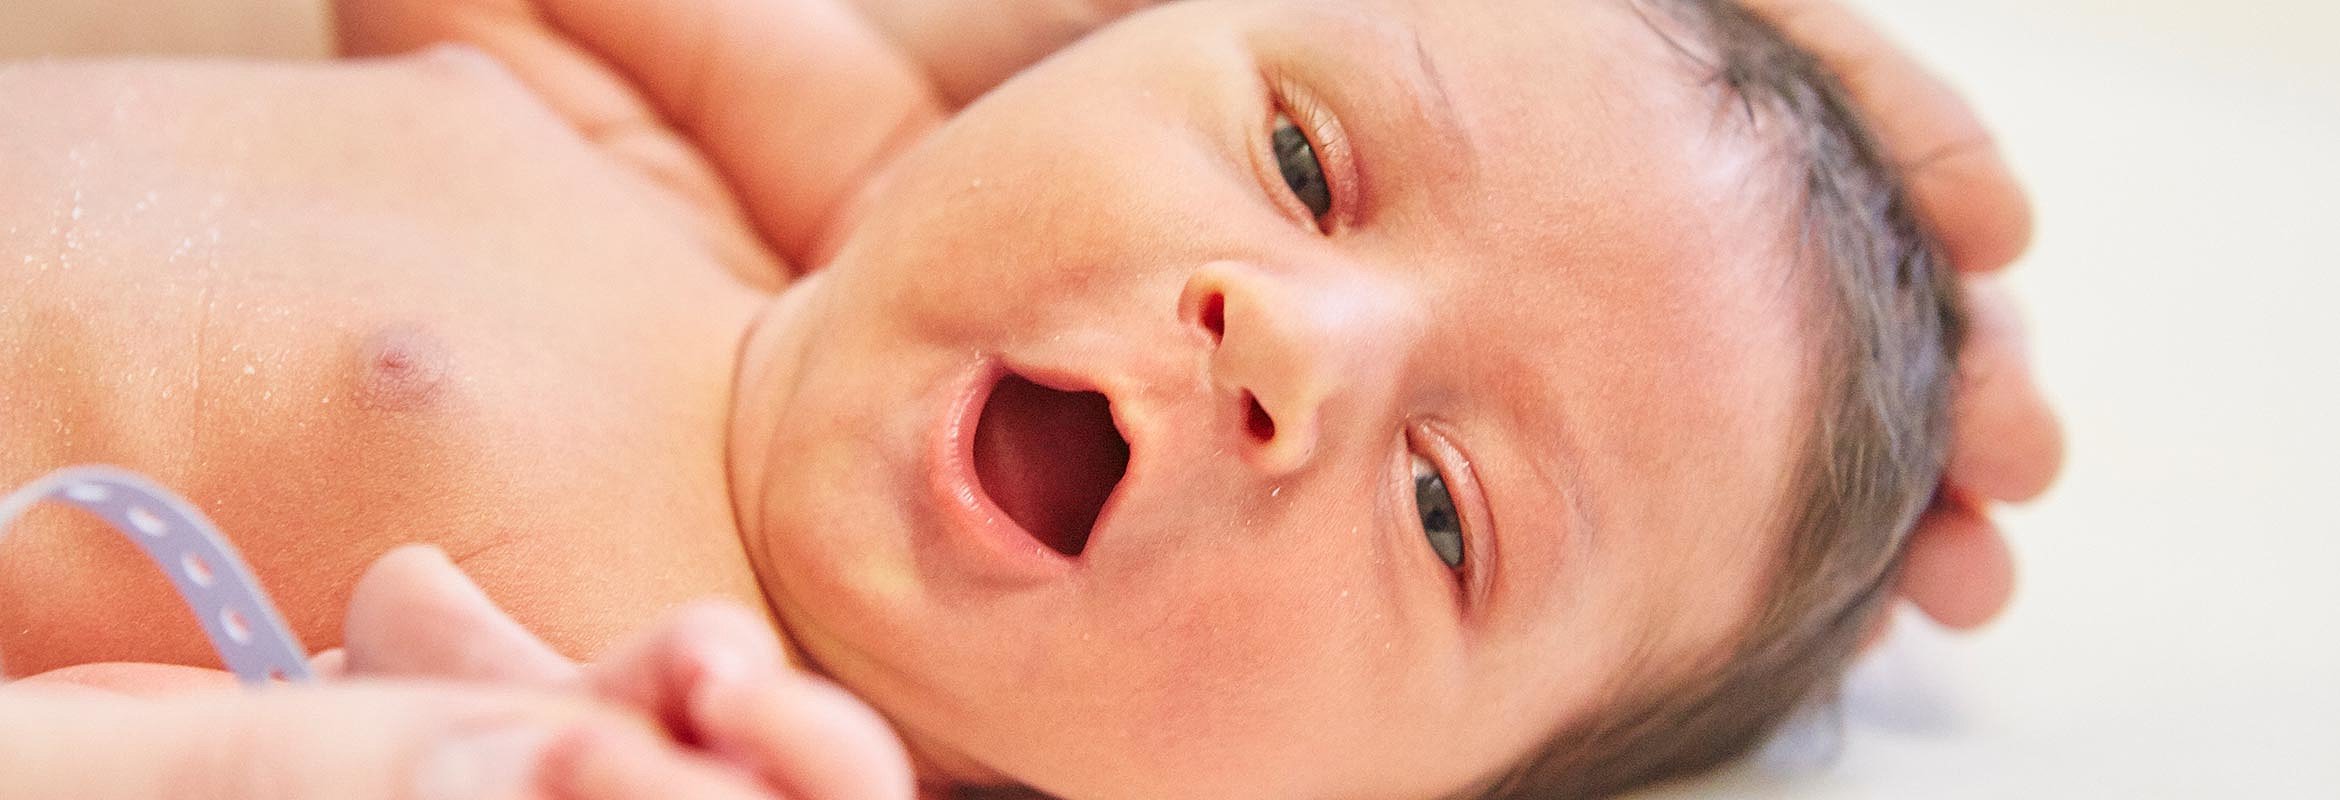 Ein Säugling mit geöffnetem Mund